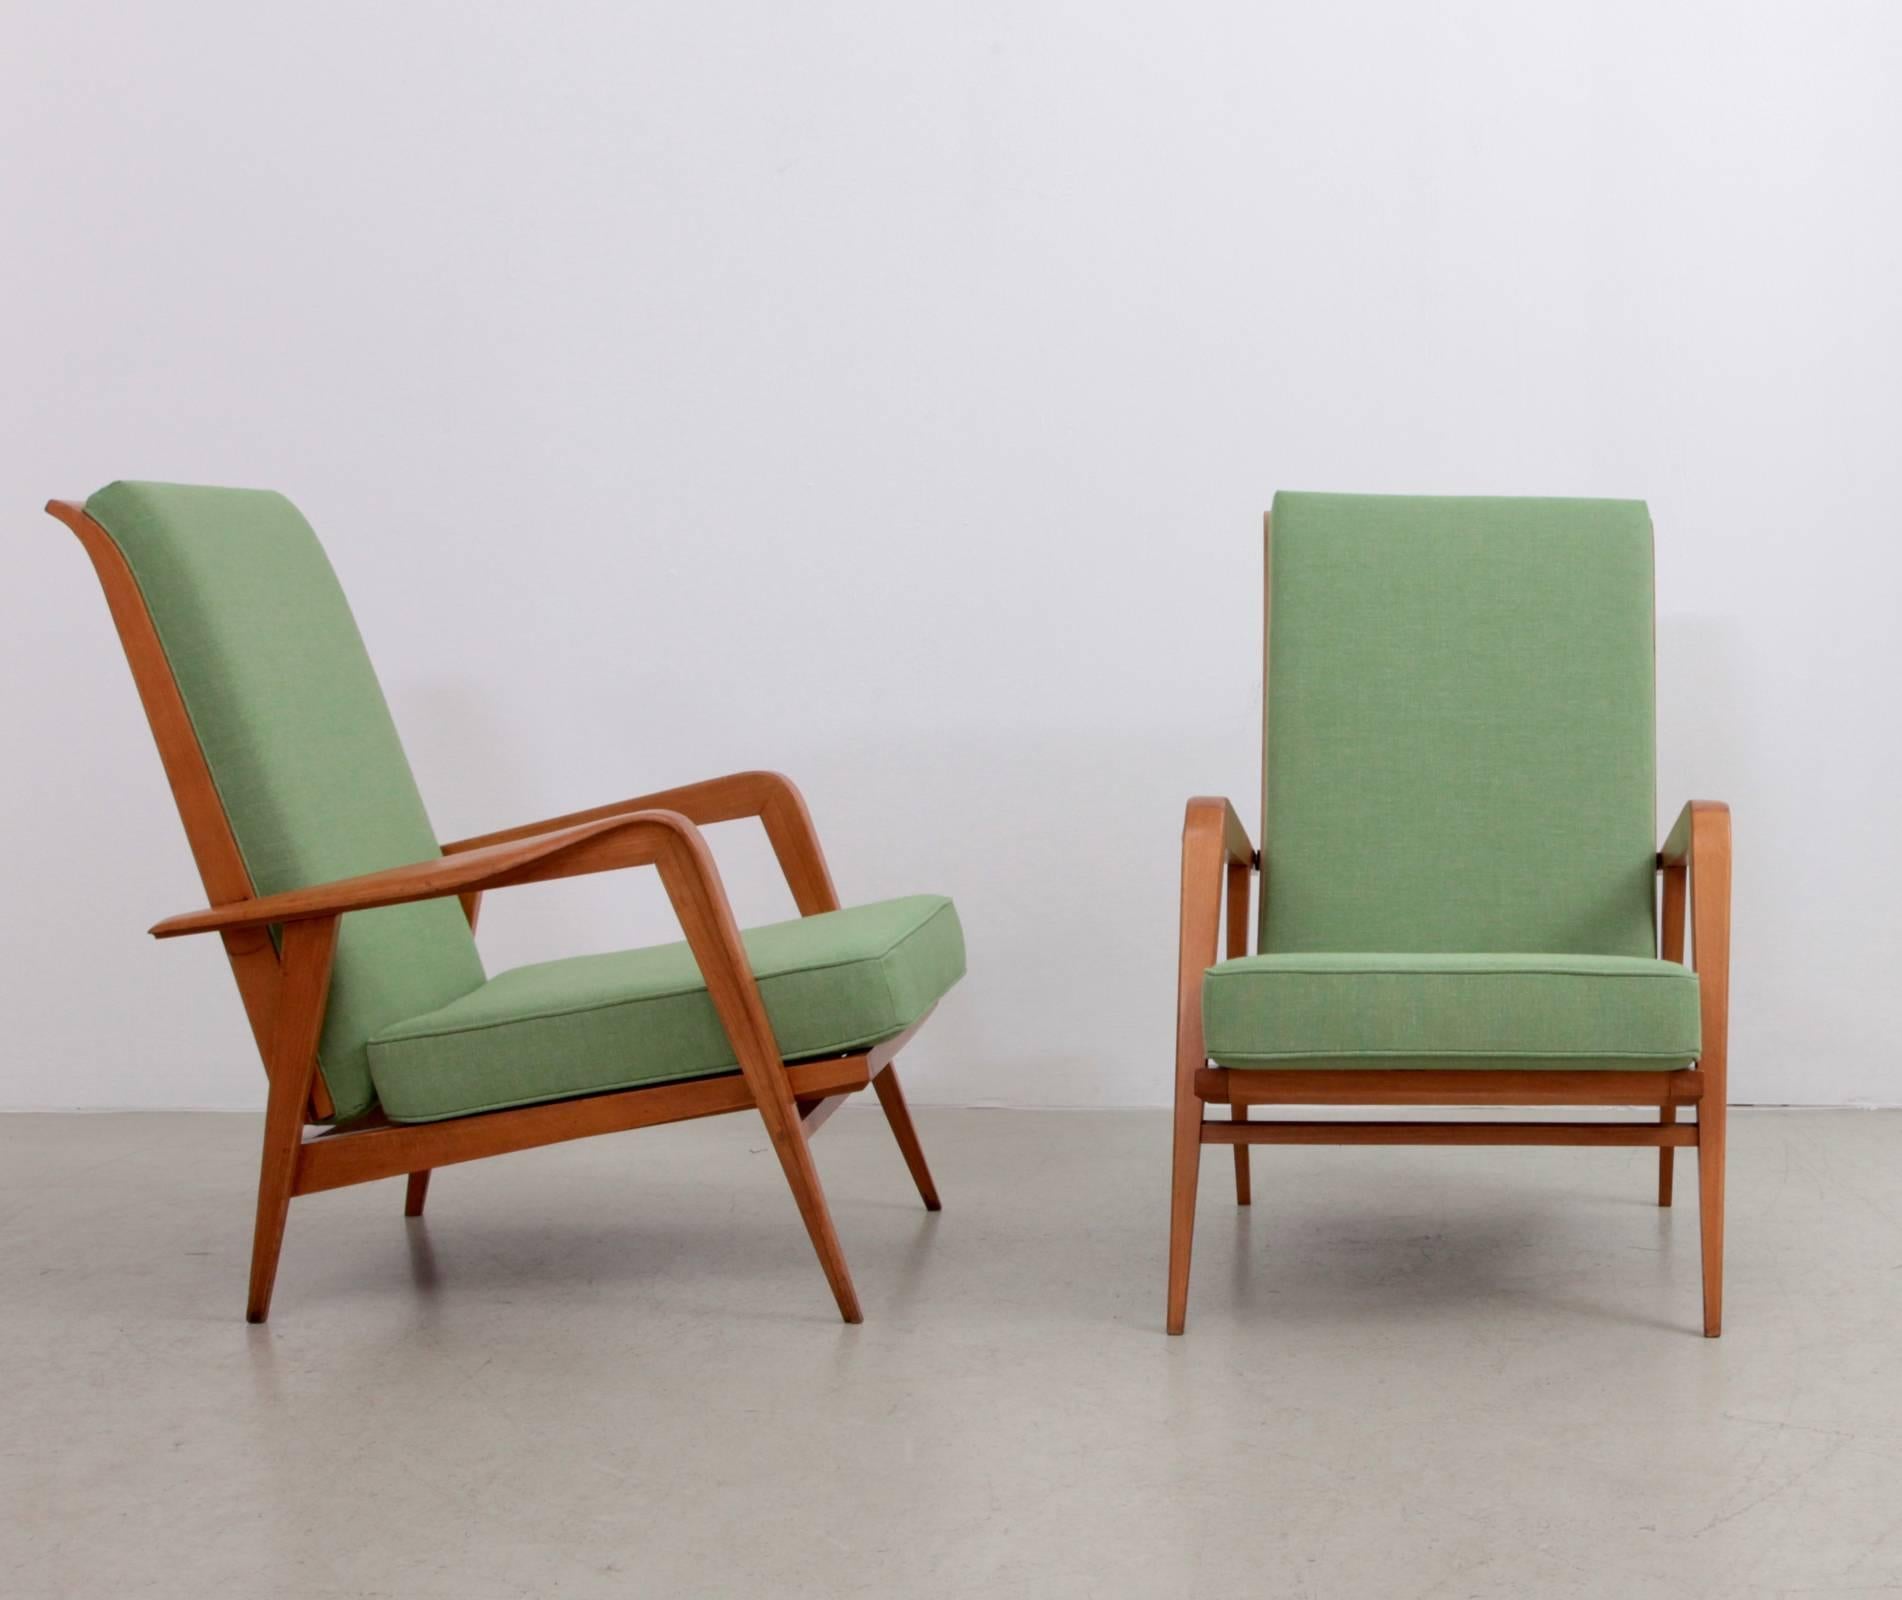 Paire de fauteuils rembourrés avec une structure en bois de hêtre massif par Etienne Henri Martin. Ces chaises ont deux positions différentes.

